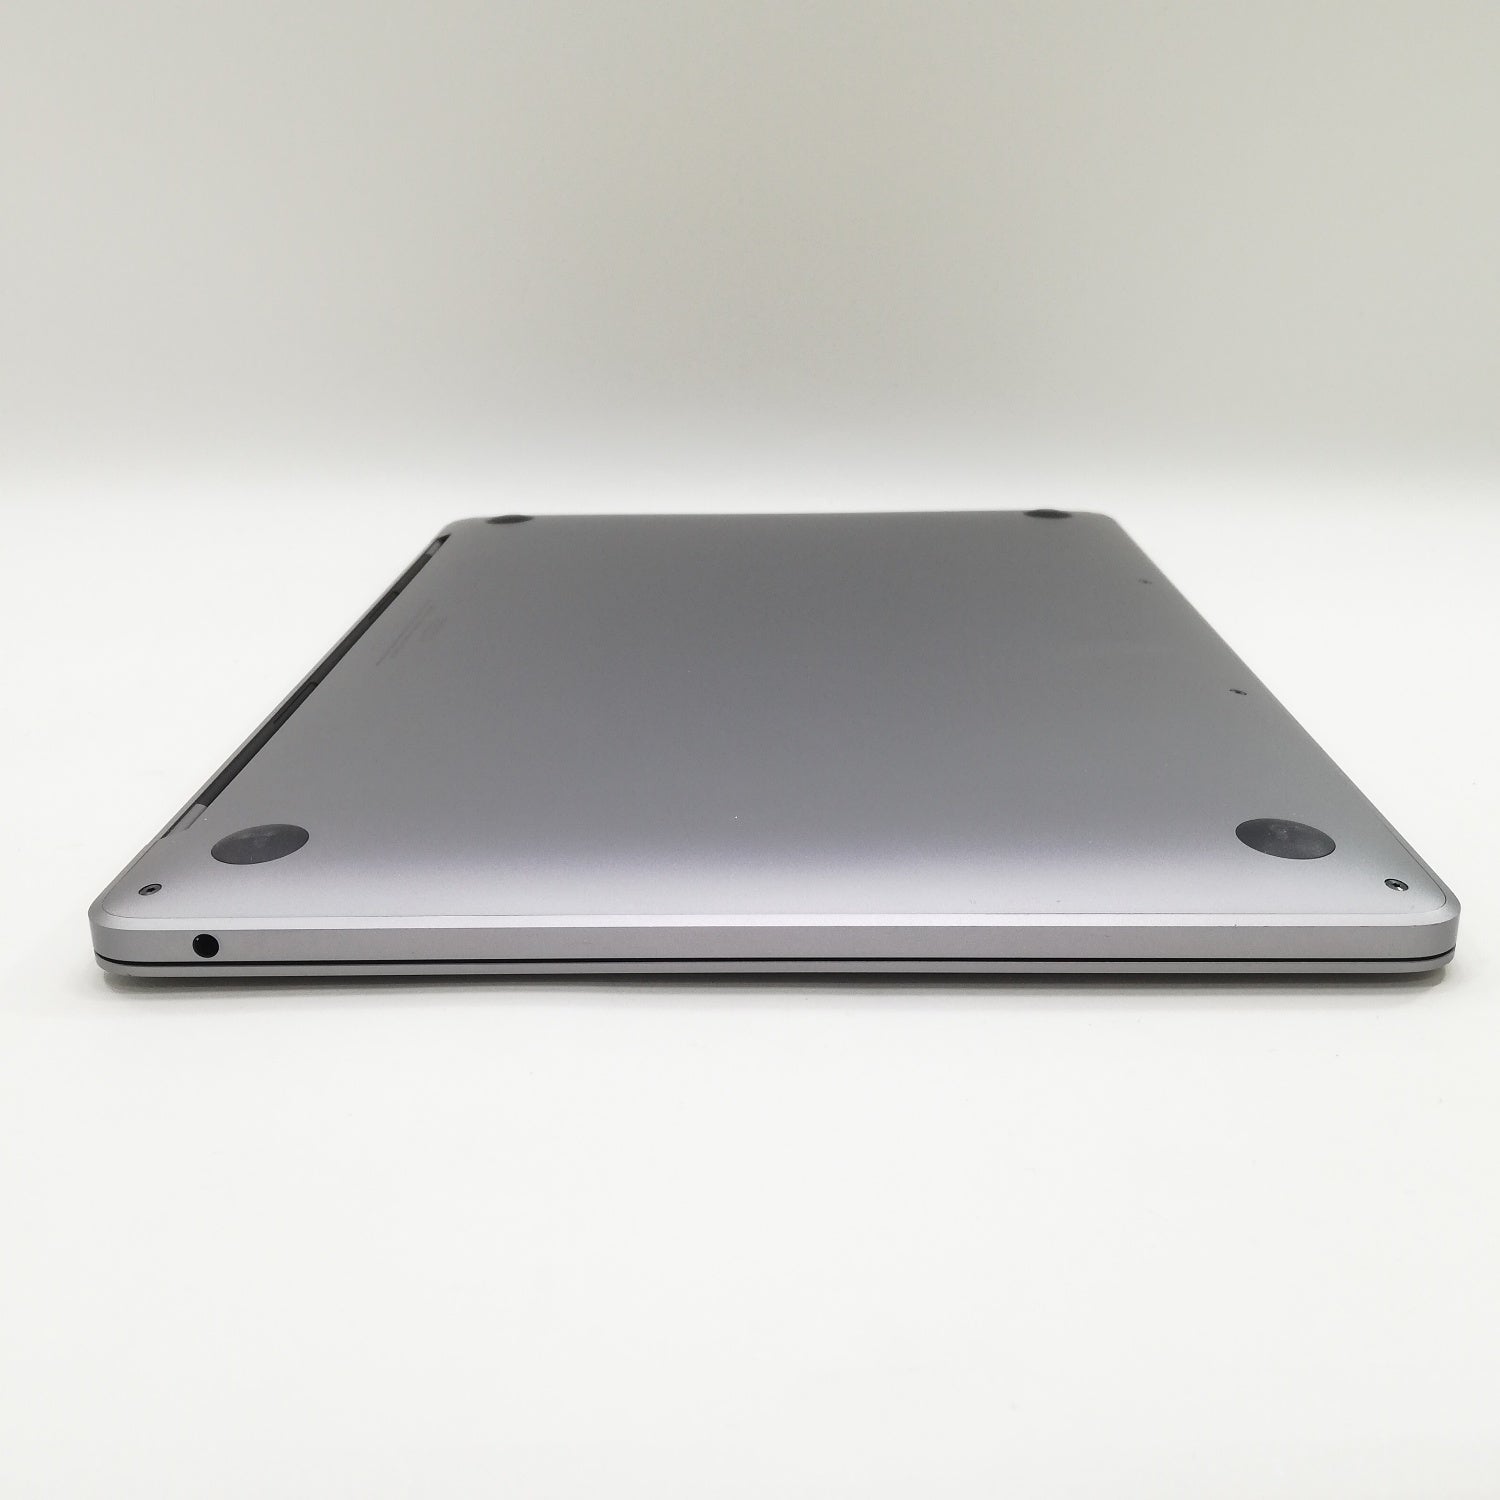 MacBook Pro M1 13インチ / 2020 / 8GB / 256GB / スペースグレイ 